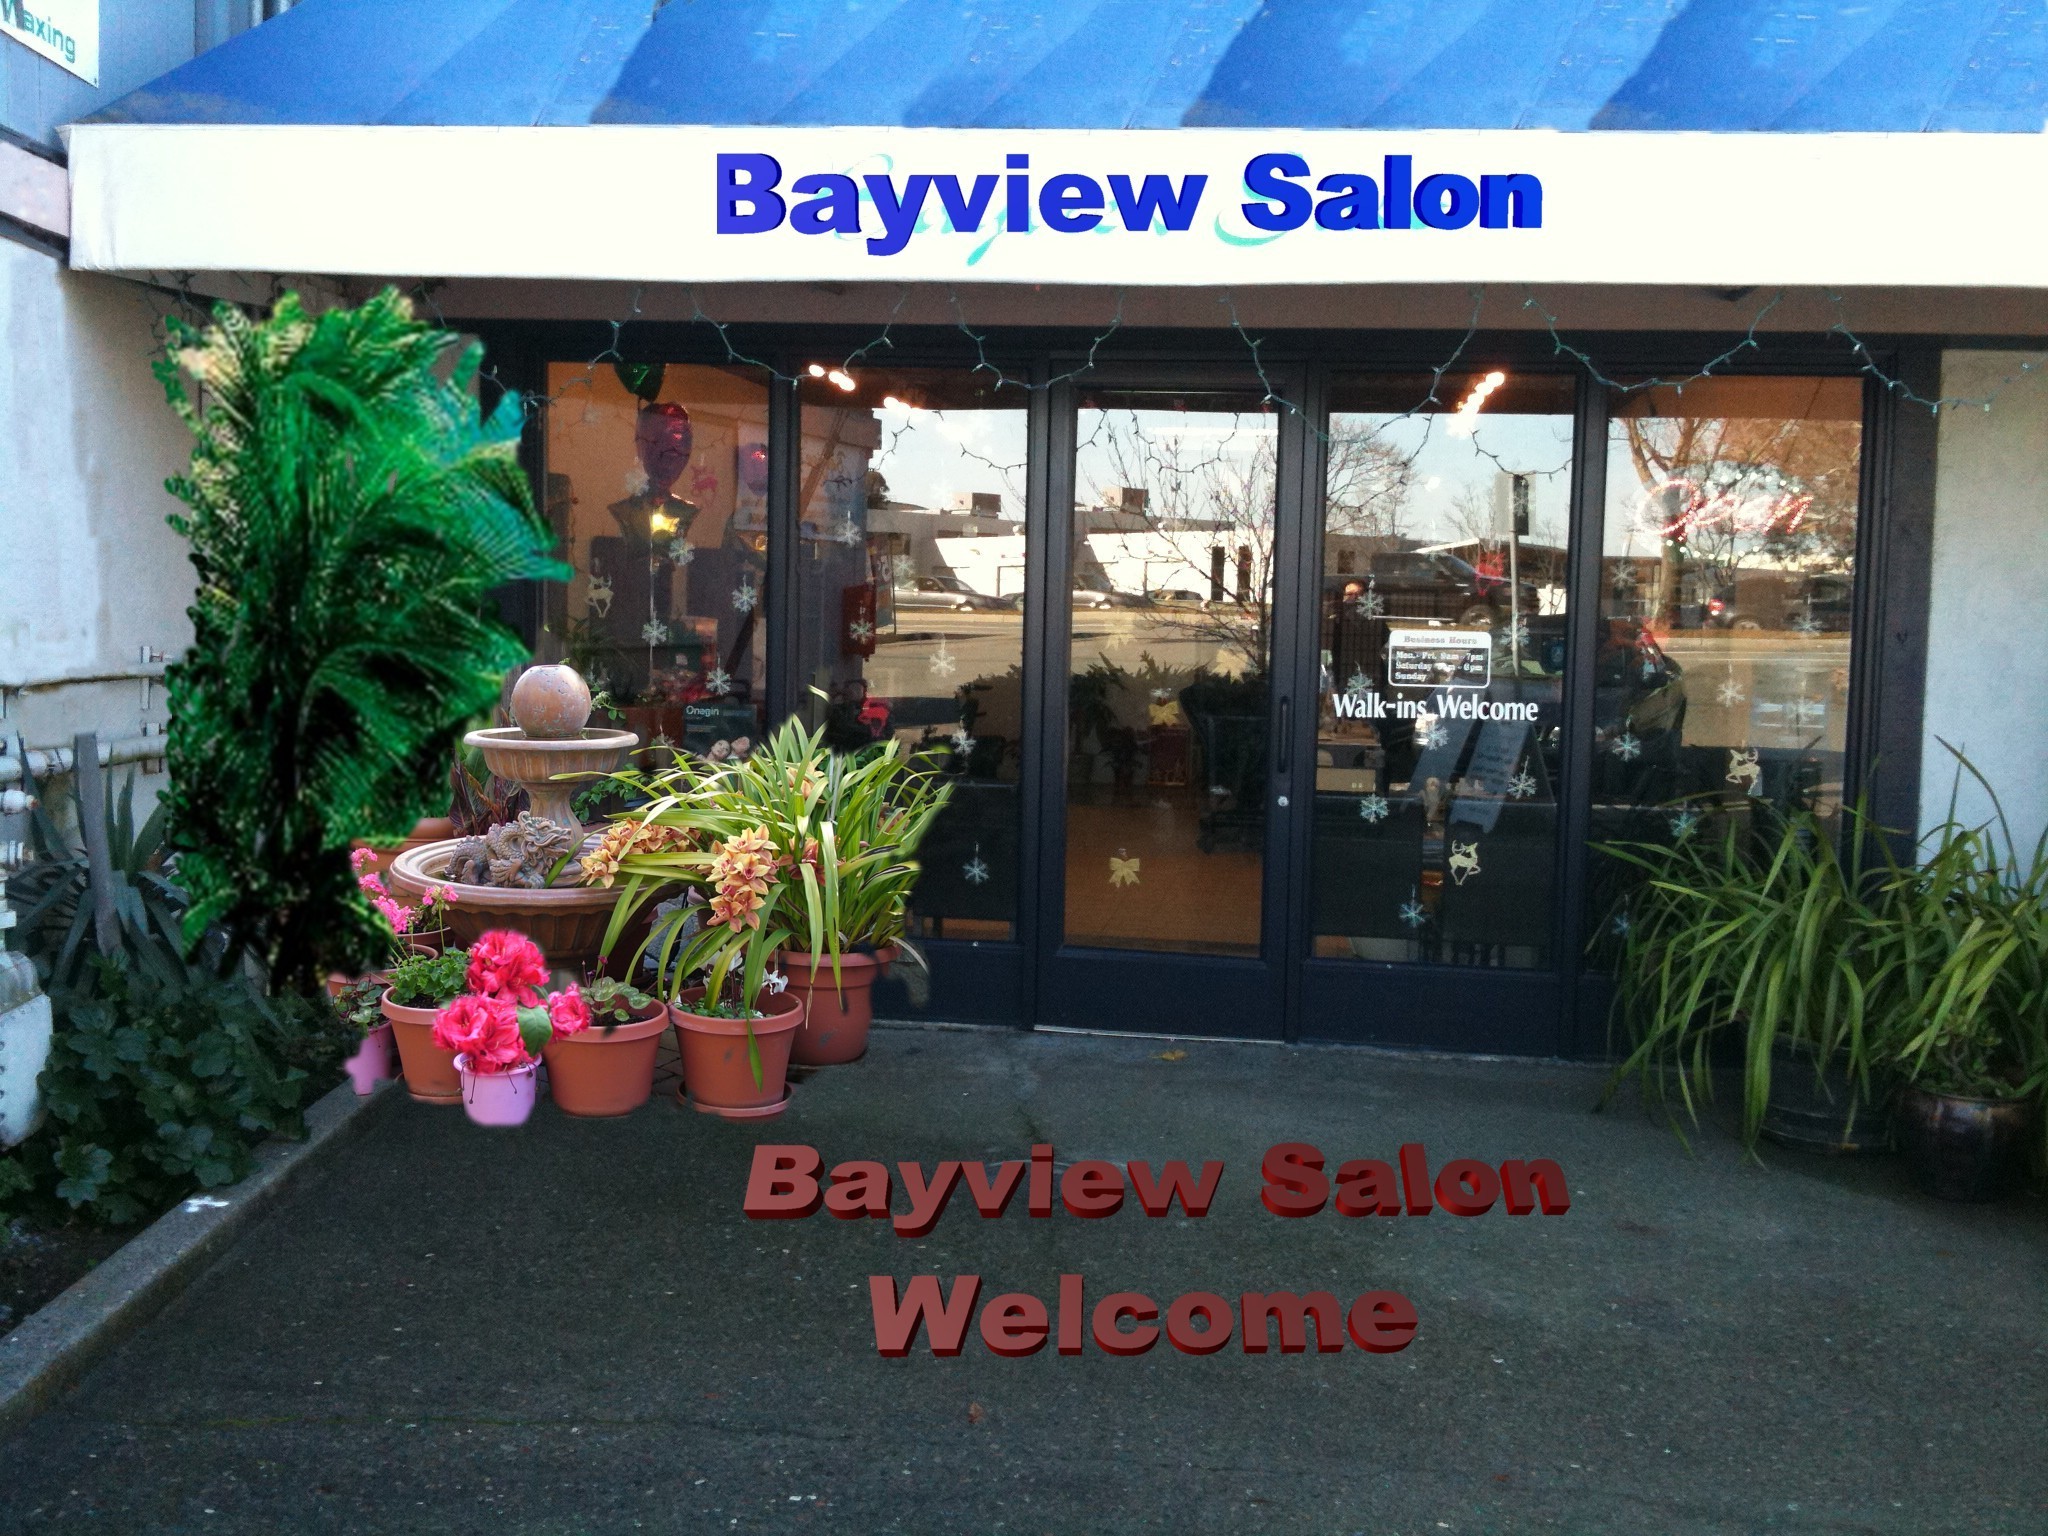 Bayview Salon - Home